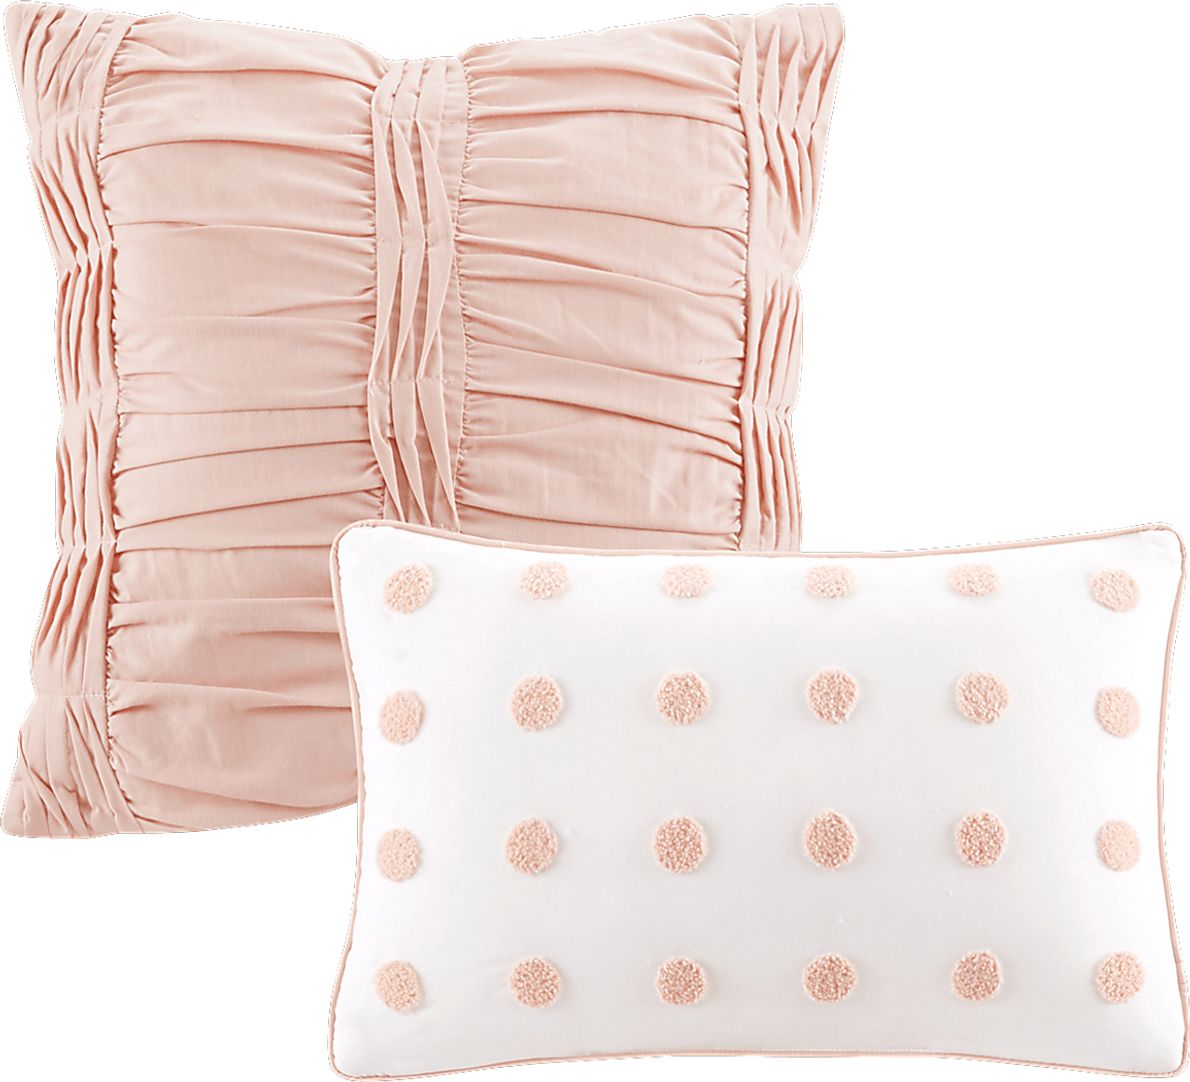 Kids Pastelle Pink 7 Pc Full/Queen Comforter Set